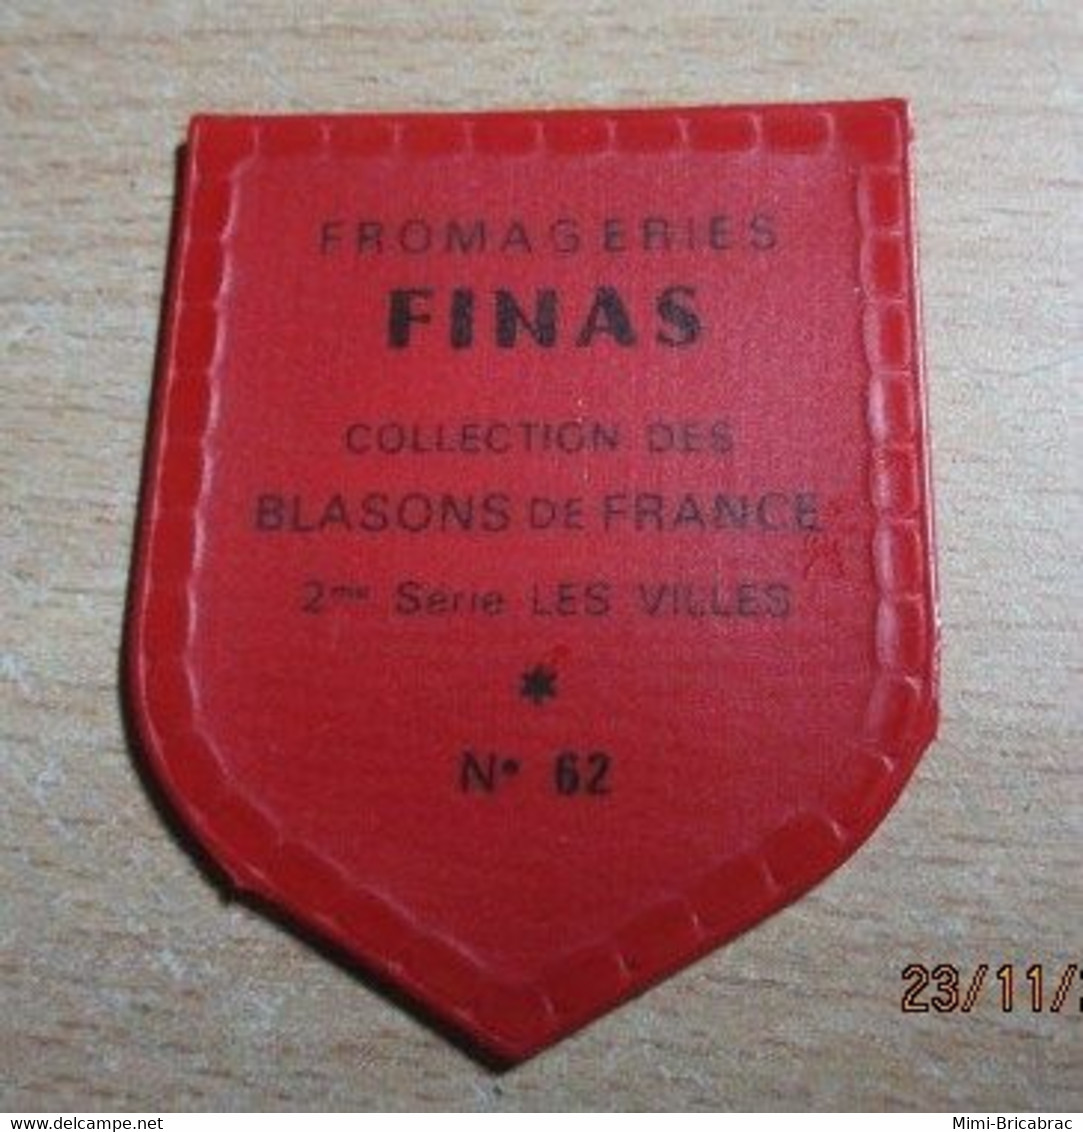 PUB1122 Ecusson Publicitaire Années 60  FROMAGERIE FINAS / BLASONS DE FRANCE LES VILLES N°52 CAEN - Magnets